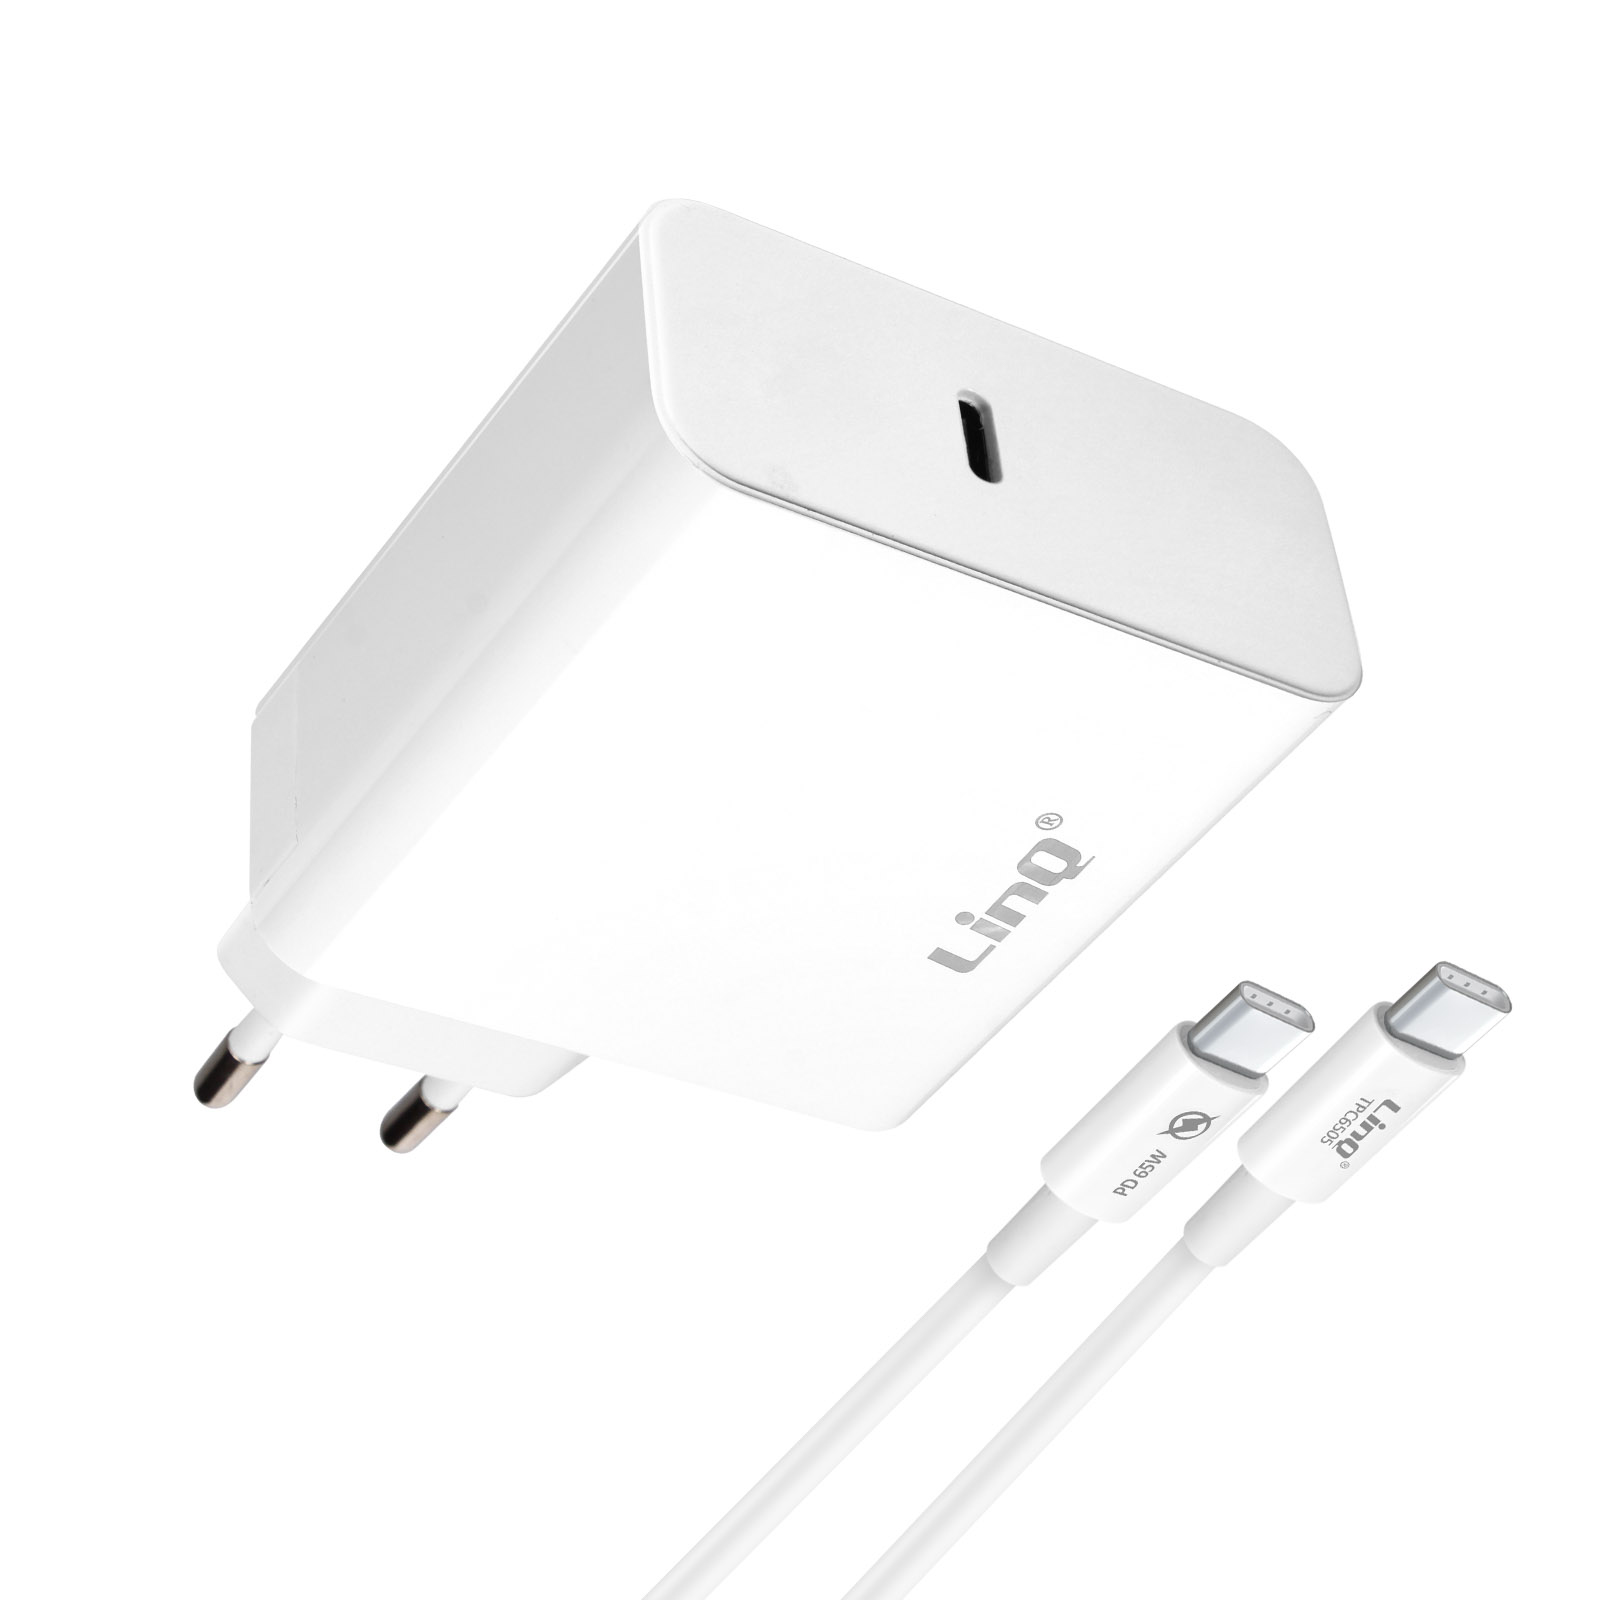 Kabel, USB-C Netzteile LINQ Weiß Universal, 1.8m 65W,